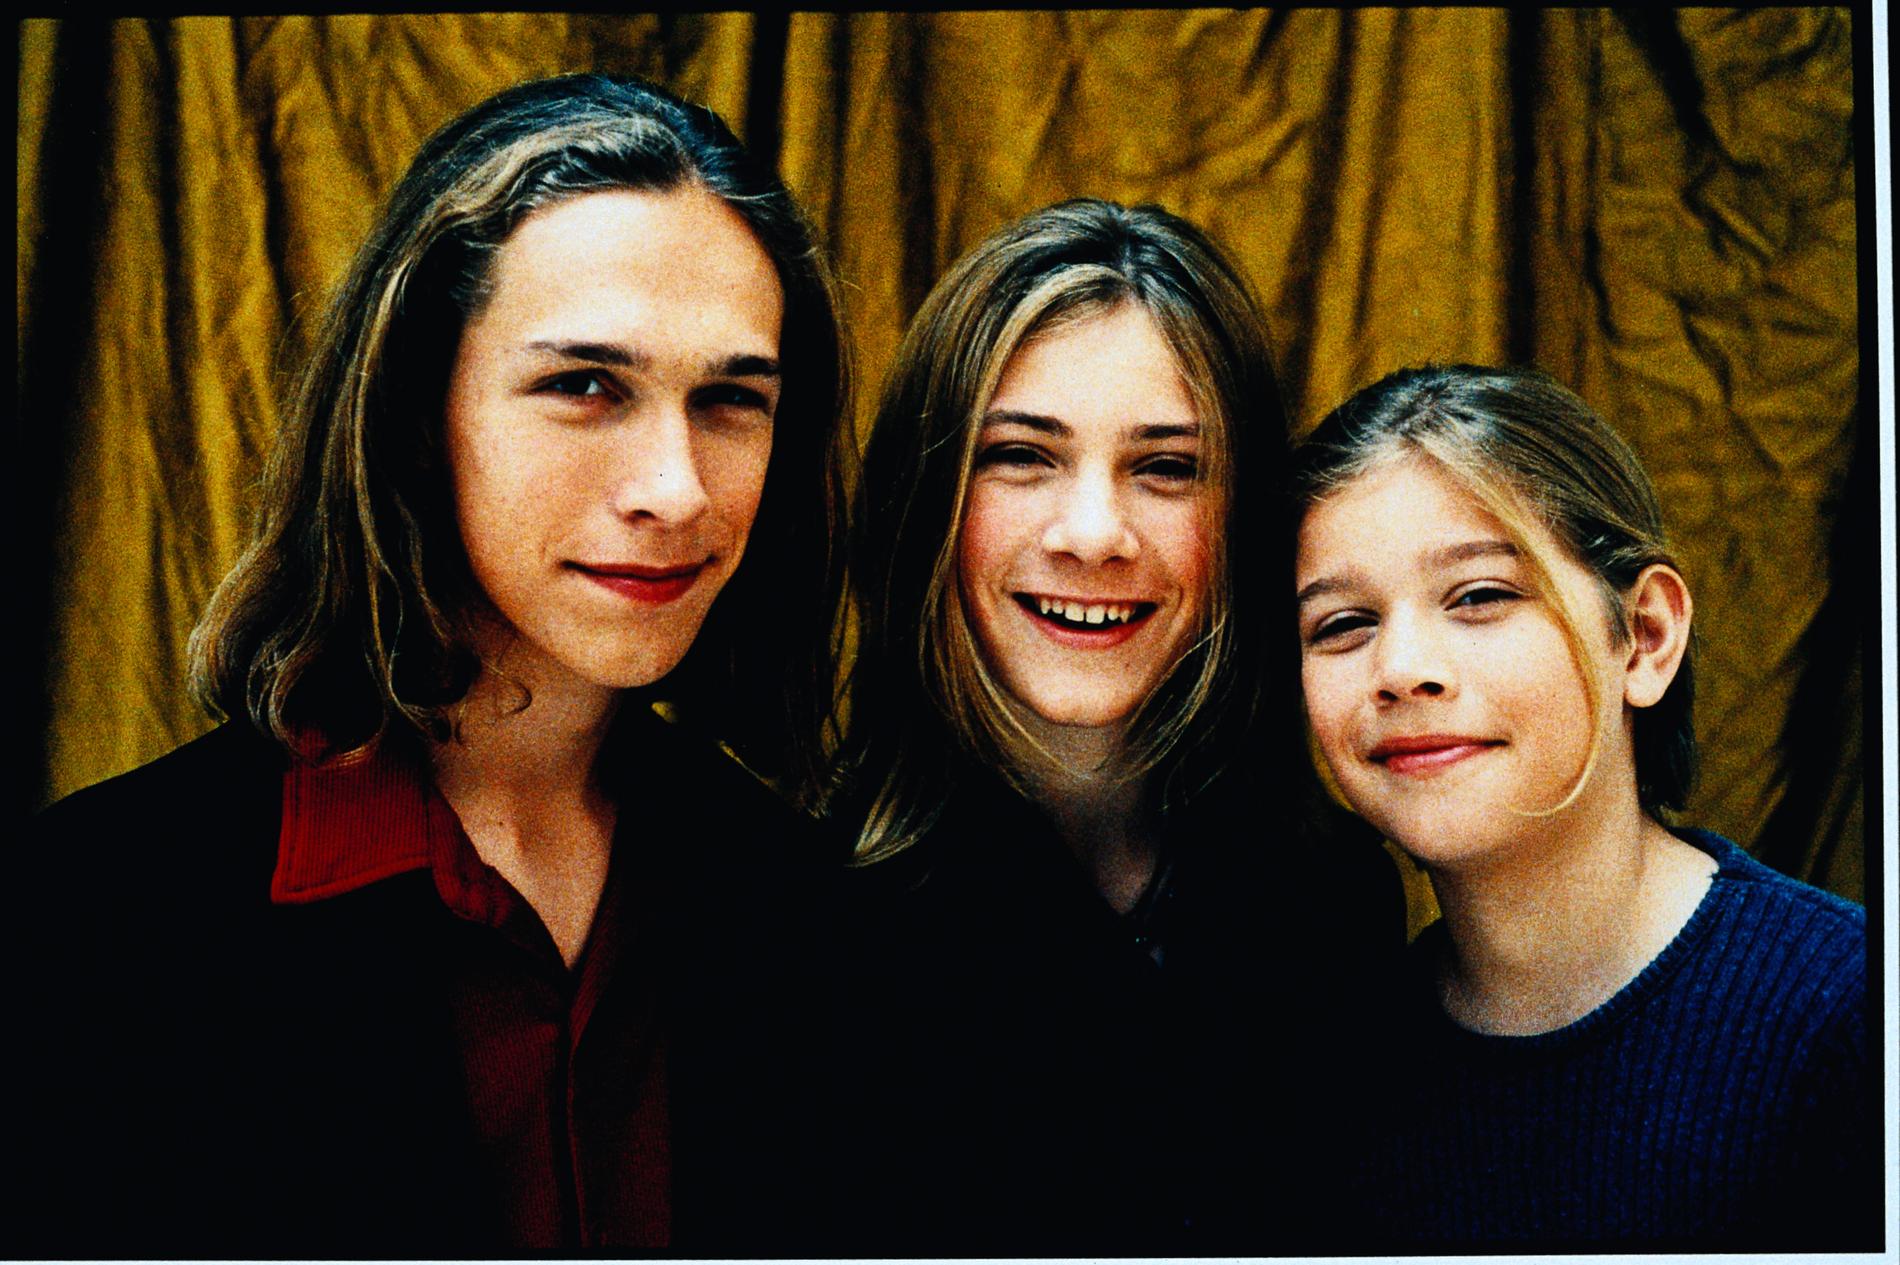 Isaac Hanson, Taylor Hanson och Zachary Hanson år 2000.